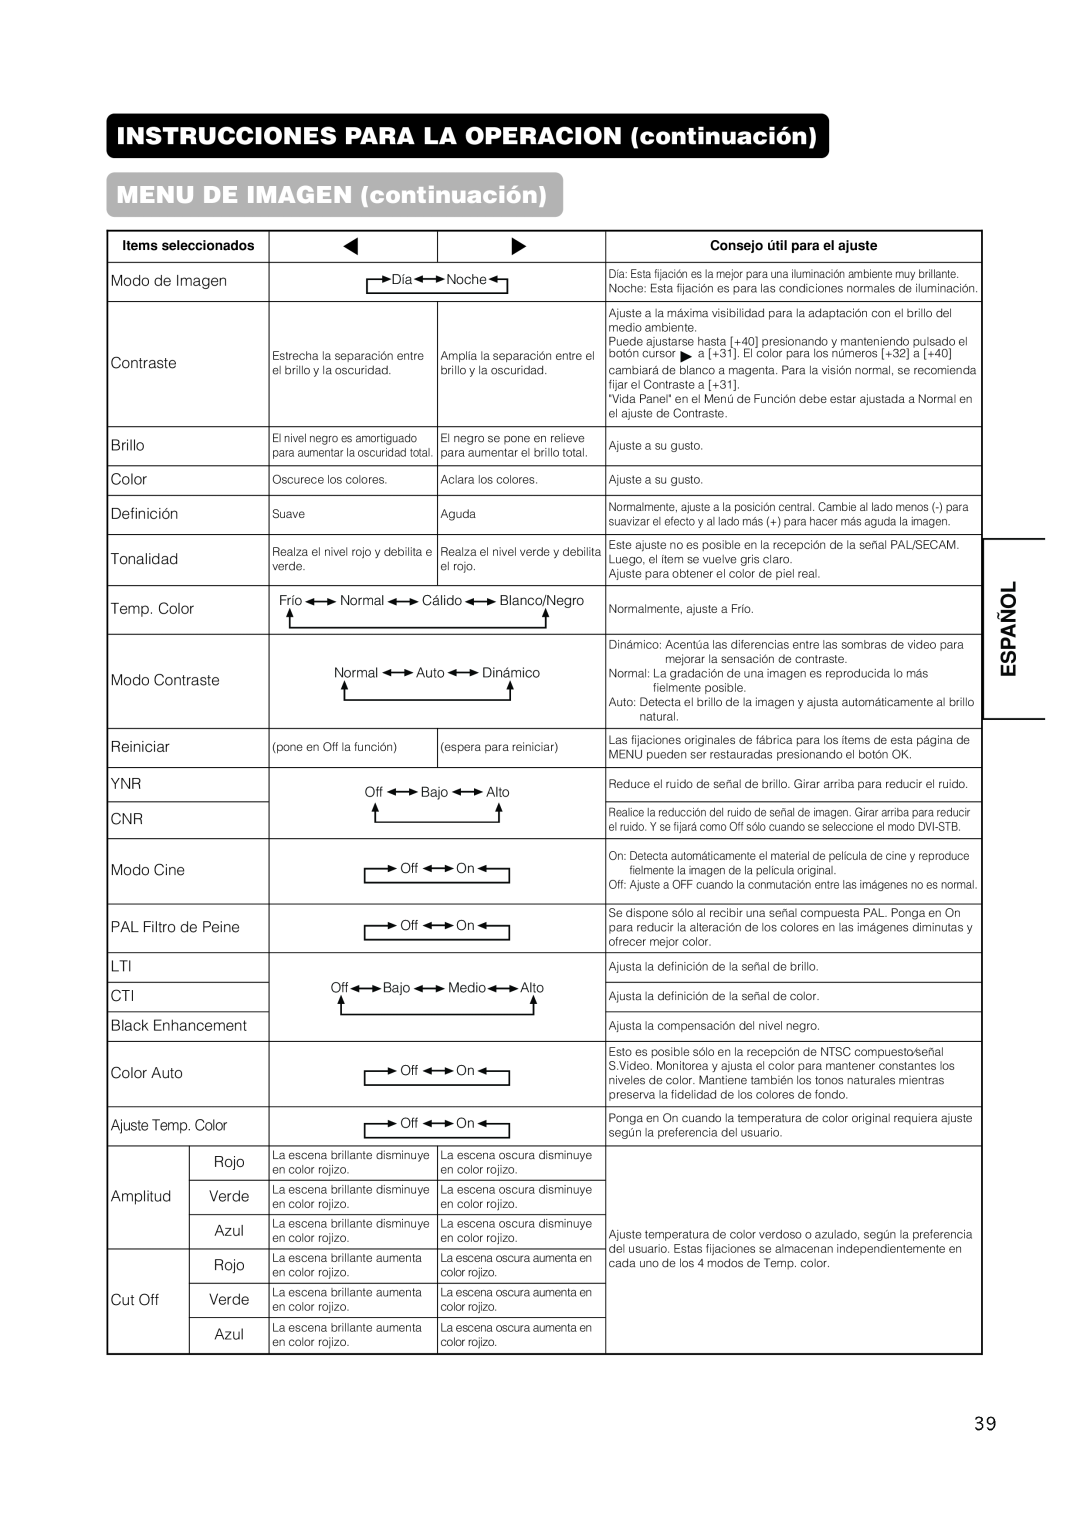 Hitachi PW1A user manual MENU DE IMAGEN continuación, INSTRUCCIONES PARA LA OPERACION continuación, Español 